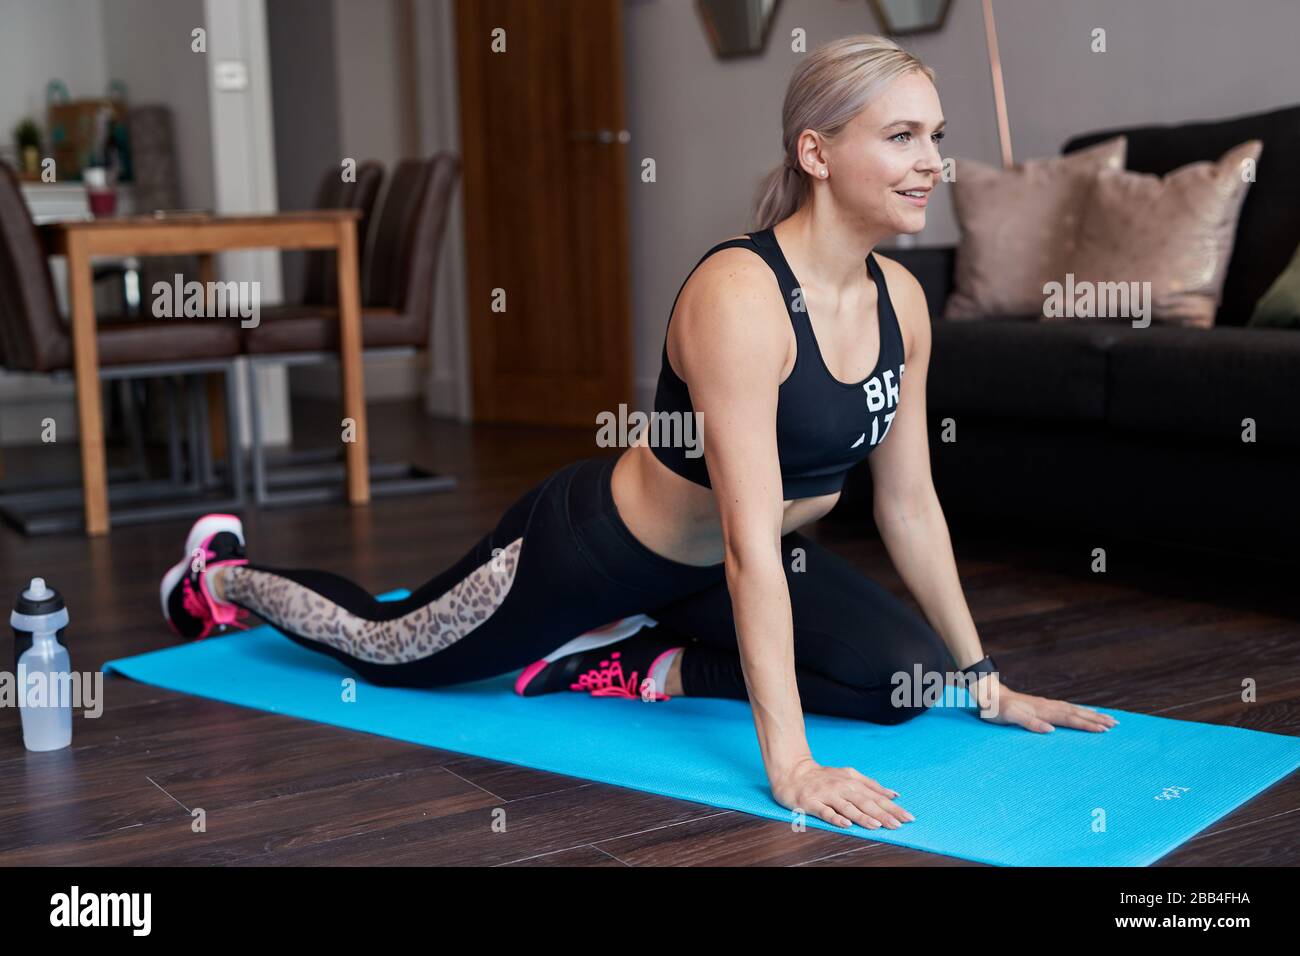 Une femme blond simple s'étire lorsqu'elle s'exerce à la maison sur un tapis dans le salon de son appartement Banque D'Images